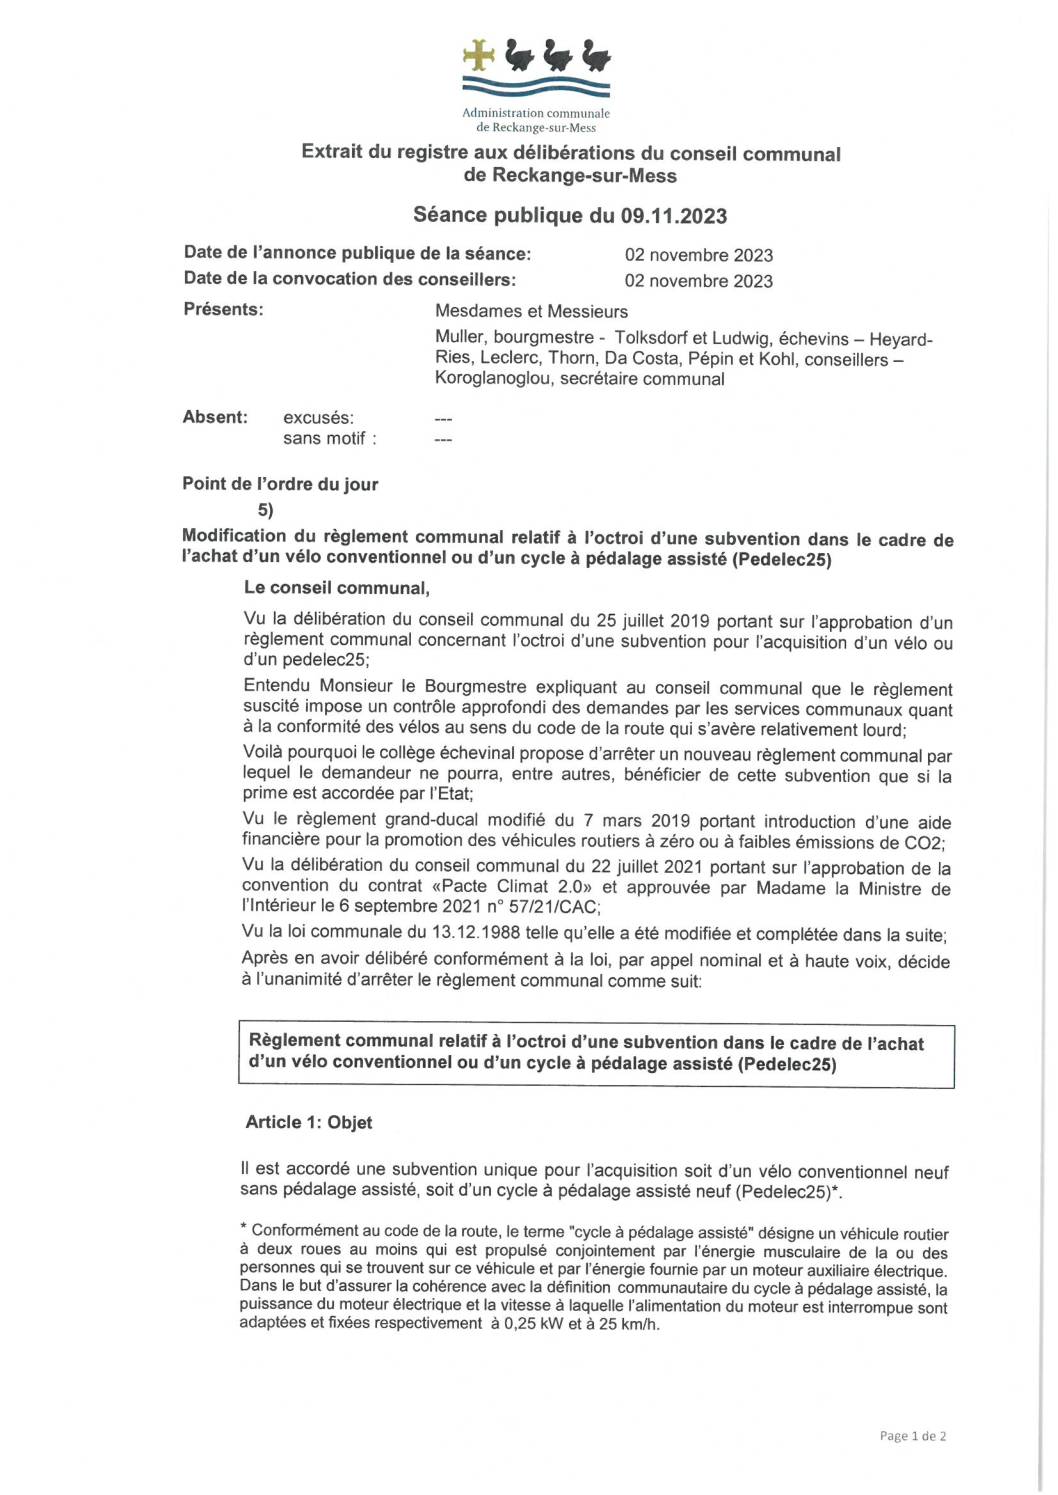 RC – Subvention pour vélo et Pedelec25 (01.01.2024)